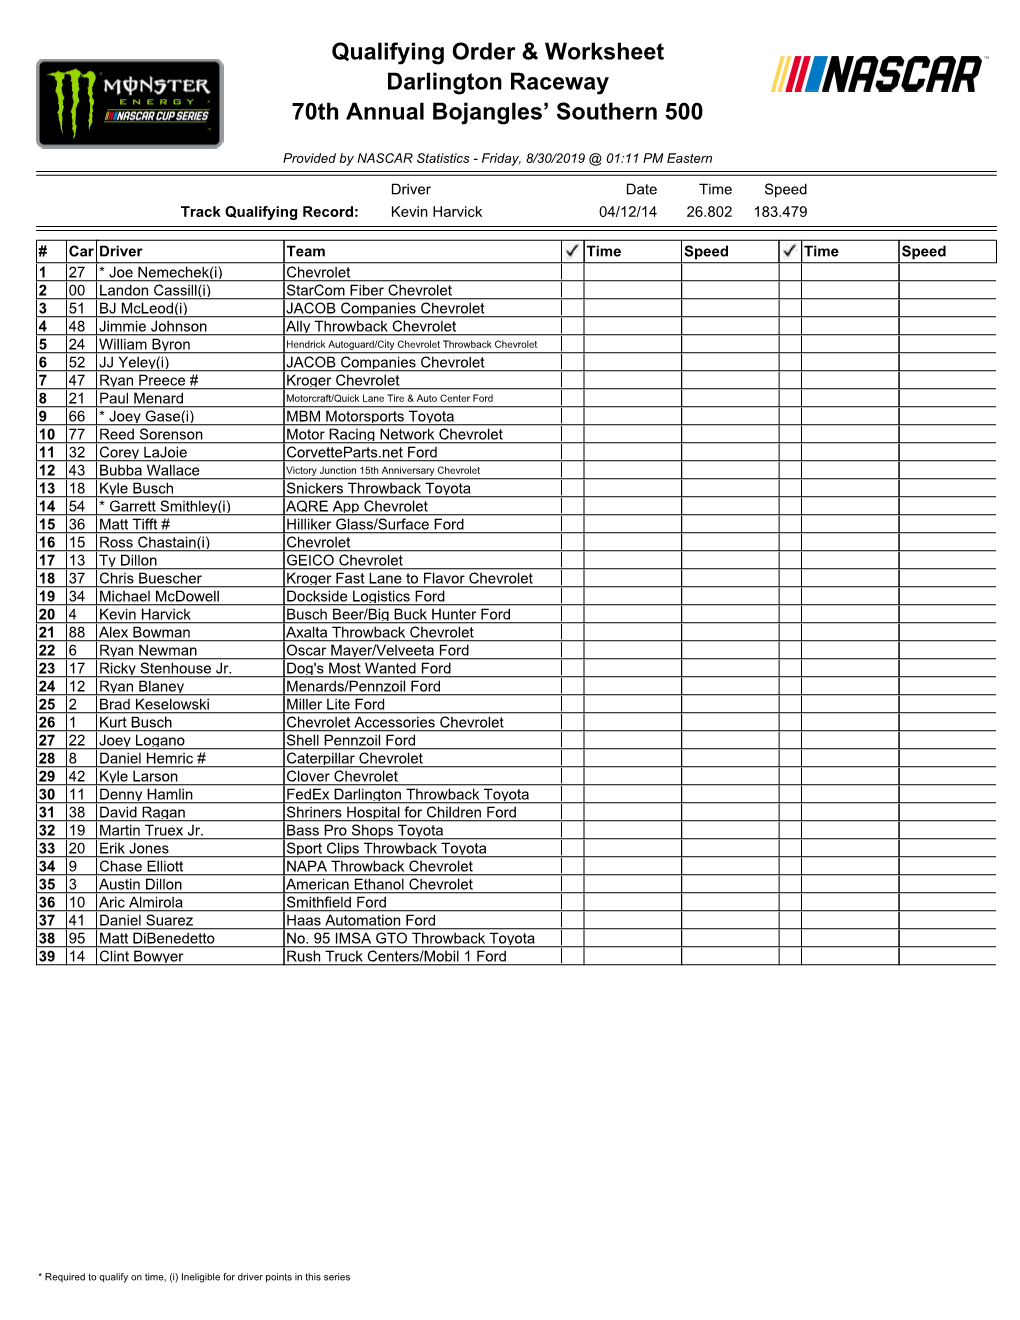 Qualifying Order & Worksheet Darlington Raceway 70Th Annual